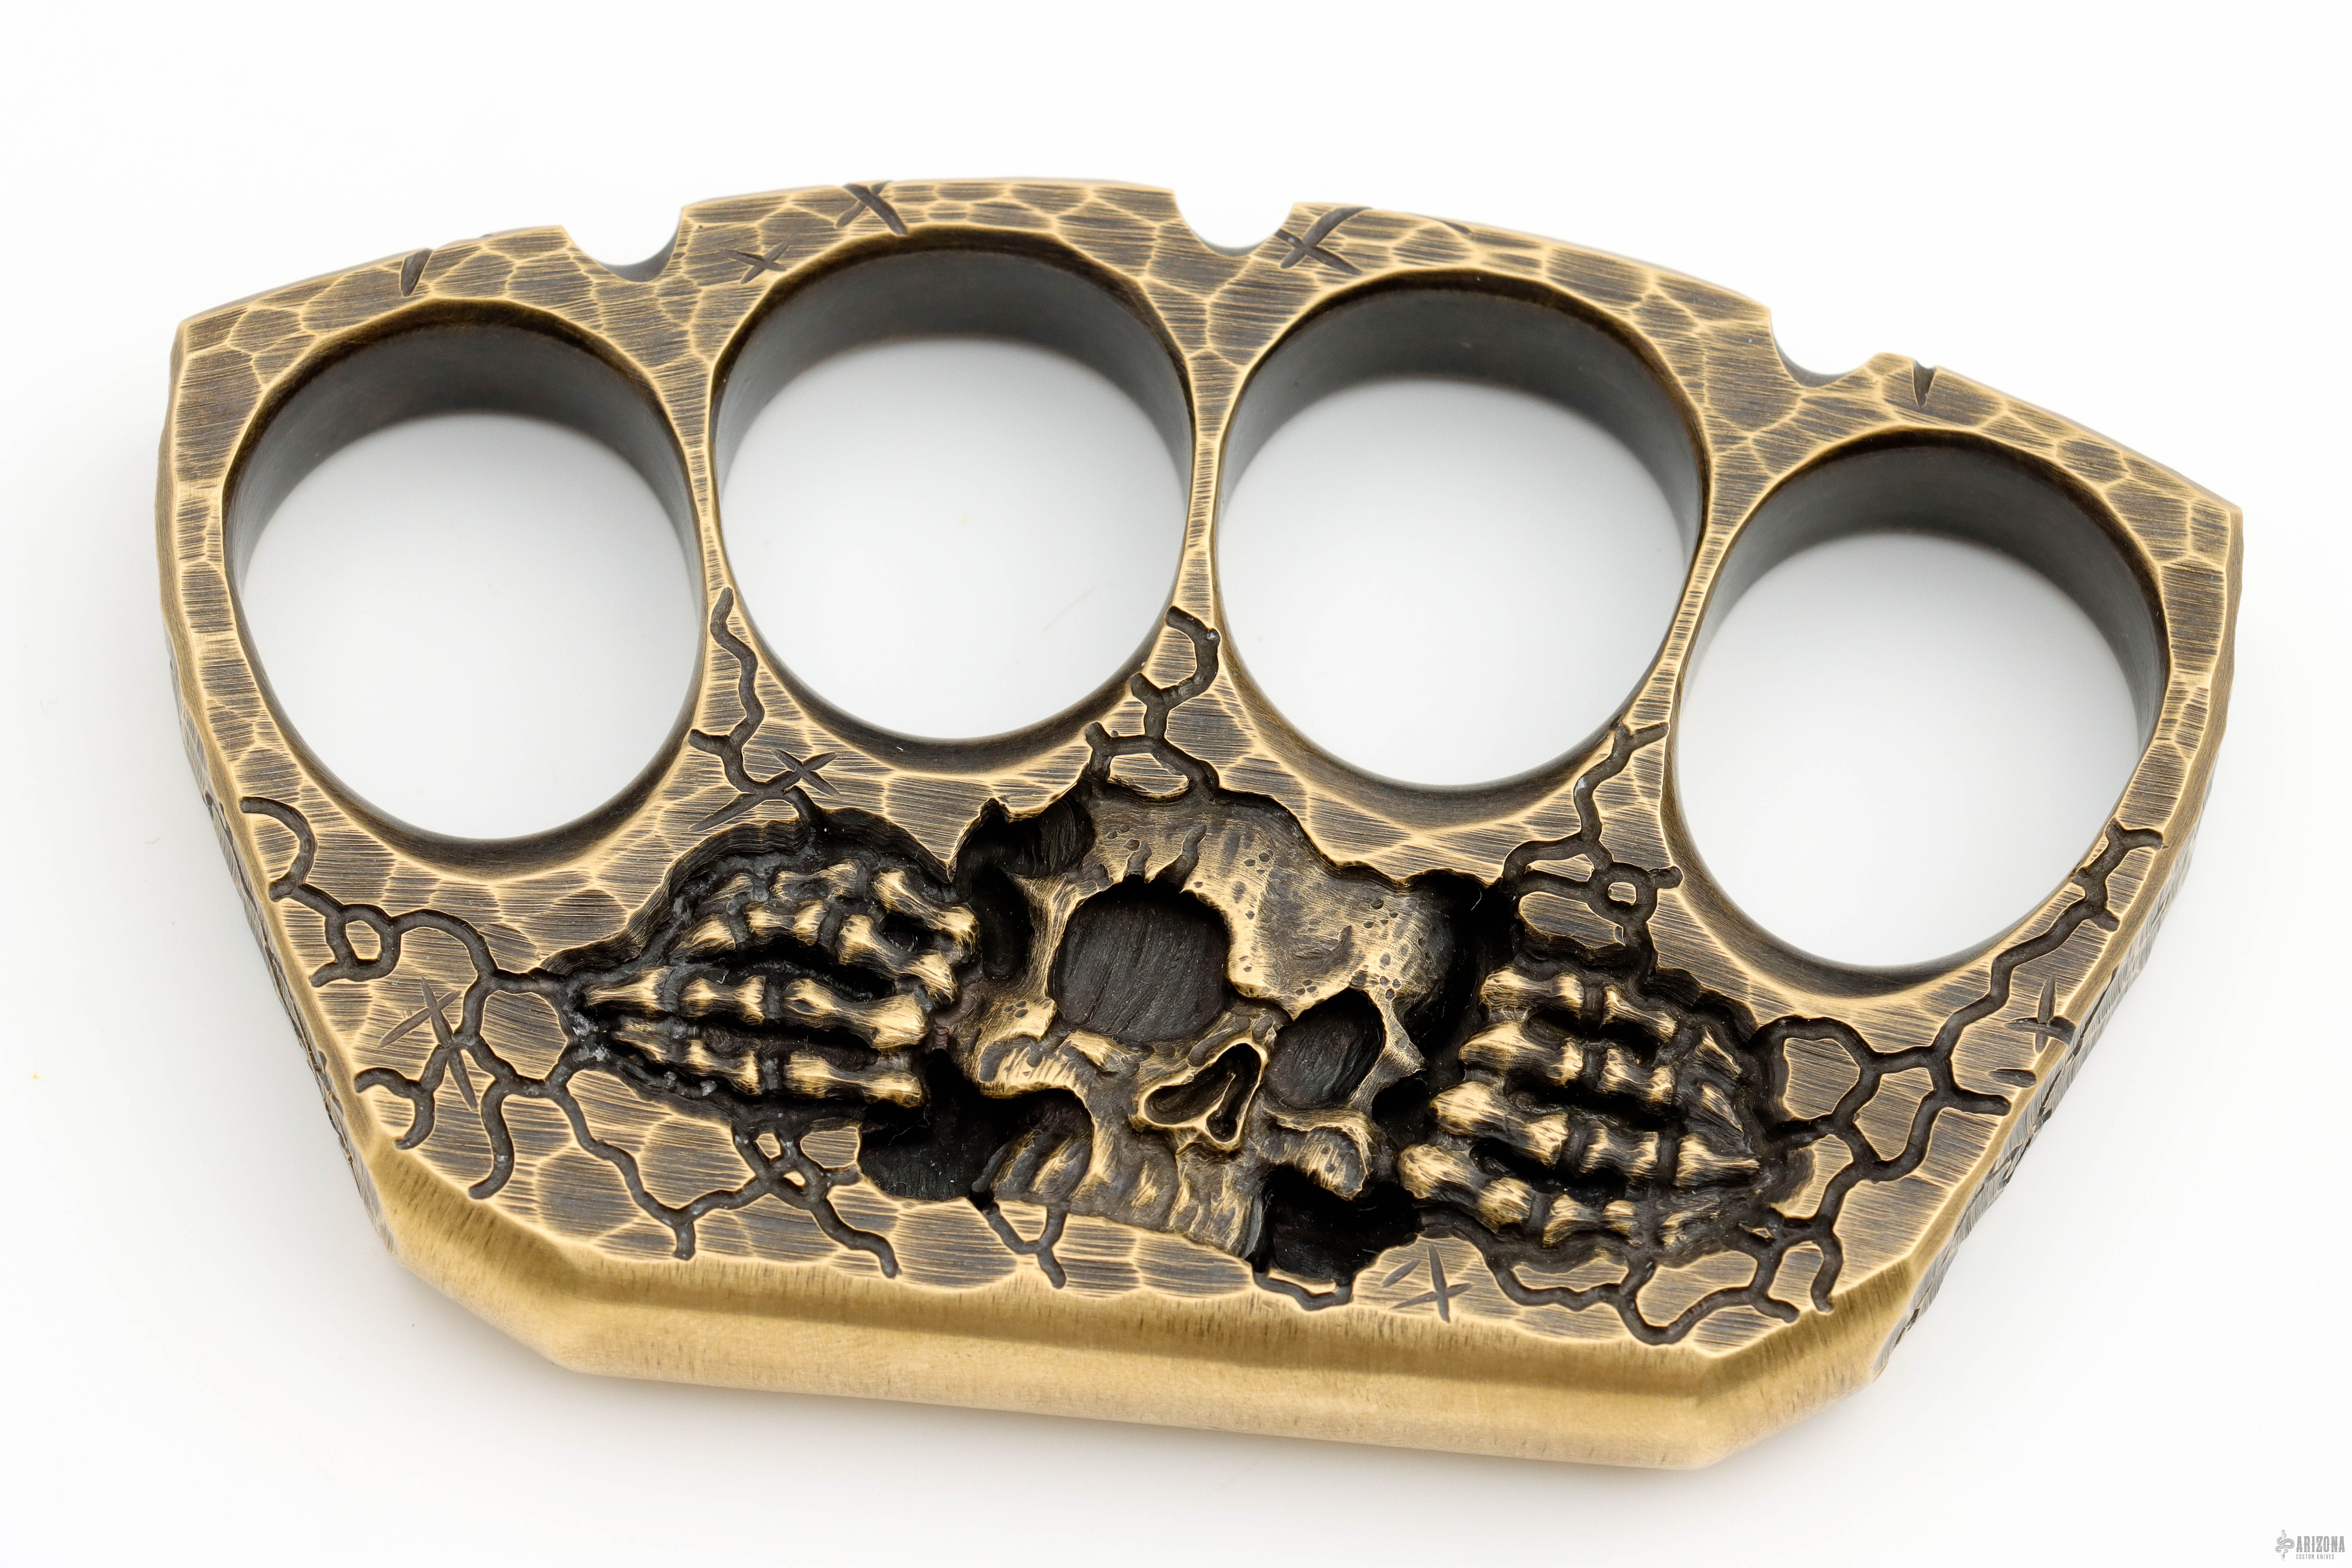 4 Finger Brass Knuckles - Skull Carving - Arizona Custom Knives